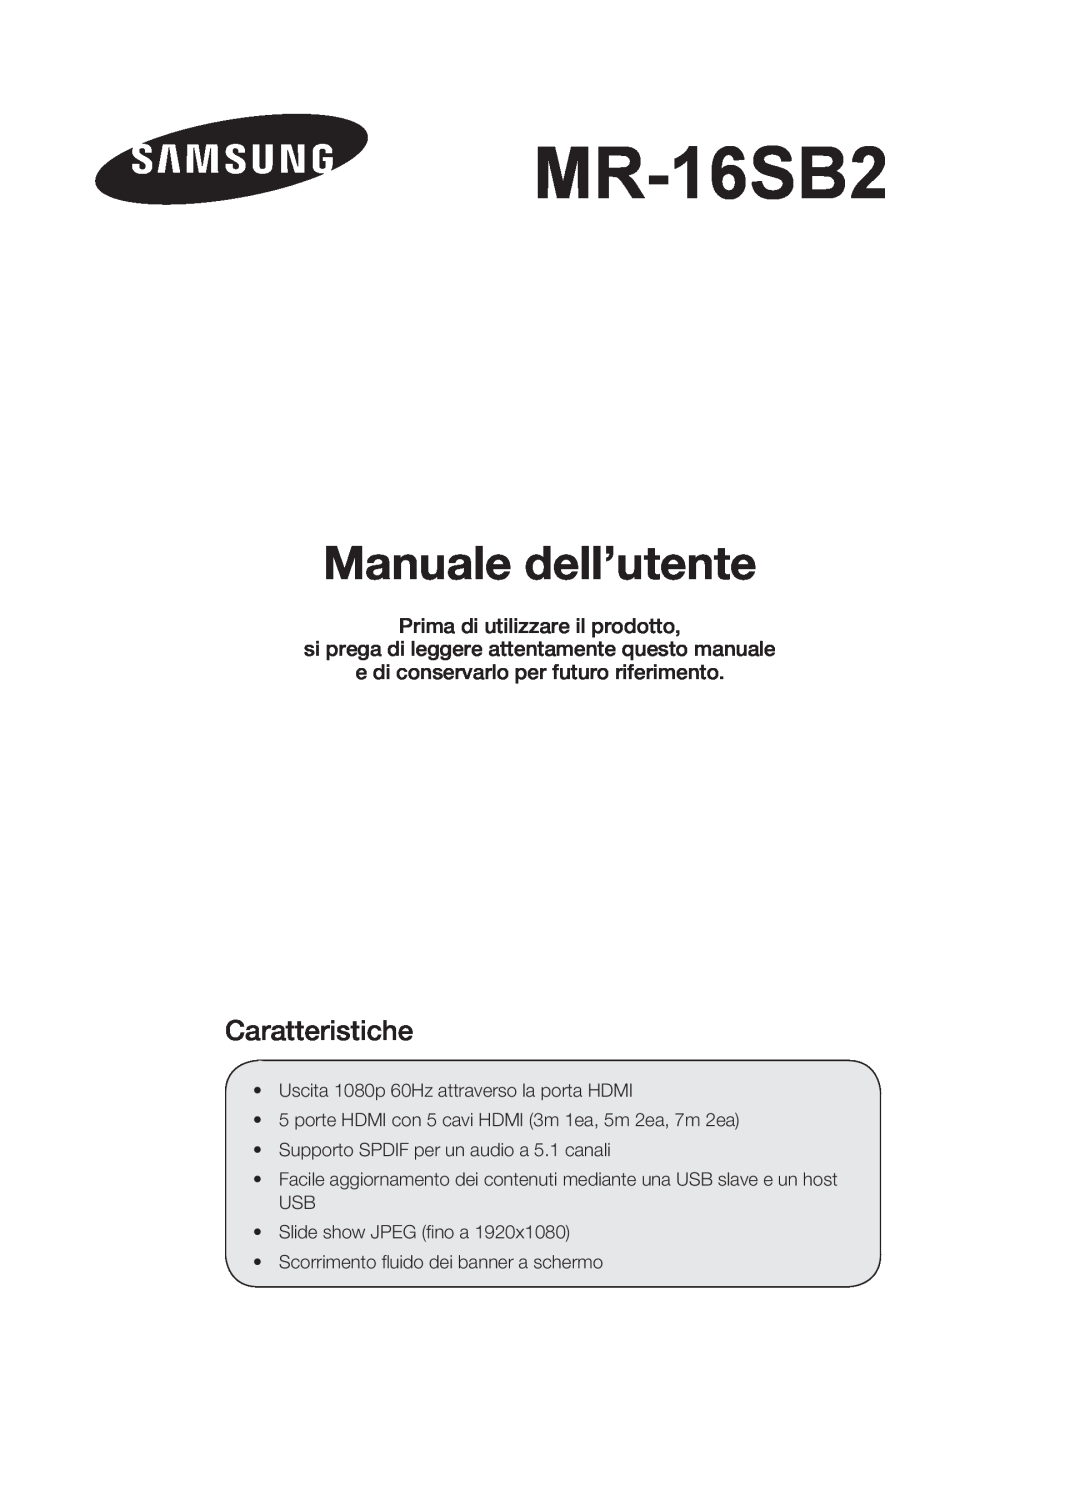 Samsung MR-16SB2 manual Manuale dell’utente, Caratteristiche, Prima di utilizzare il prodotto 